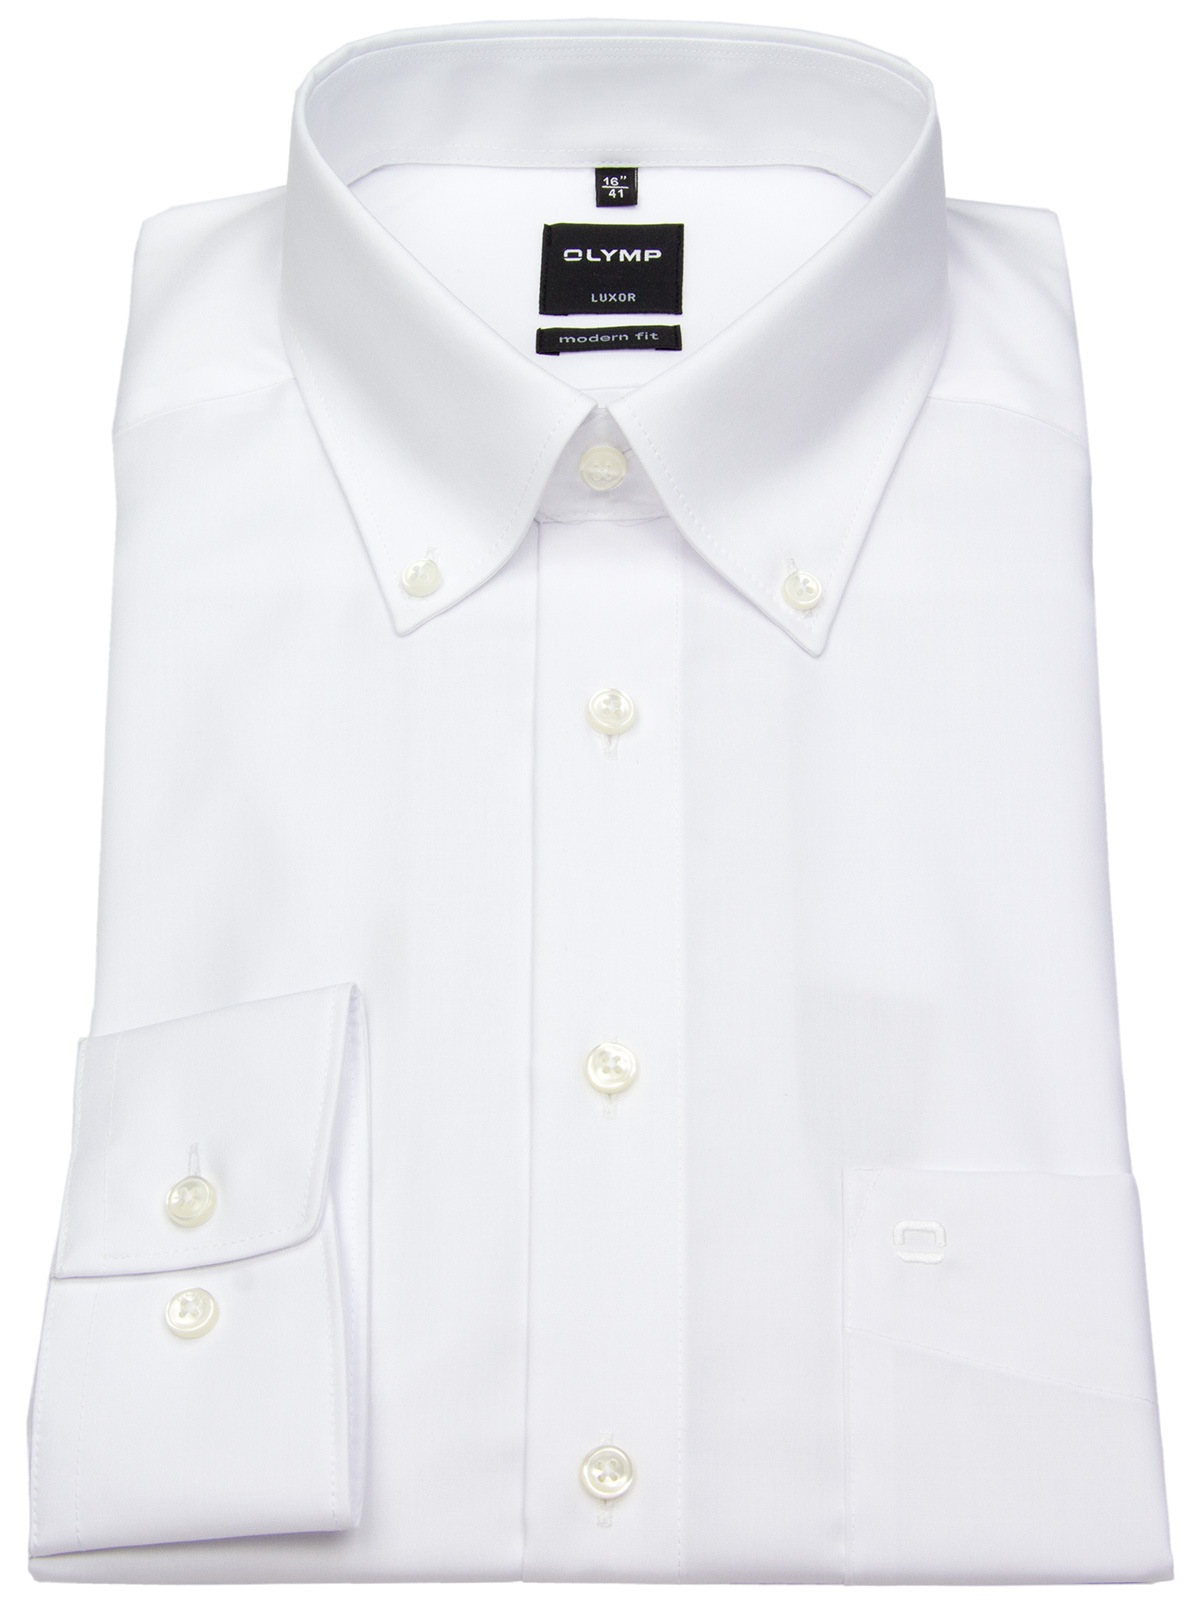 Kragen - Modern Button-Down weiß - Hemd OLYMP - Fit Luxor